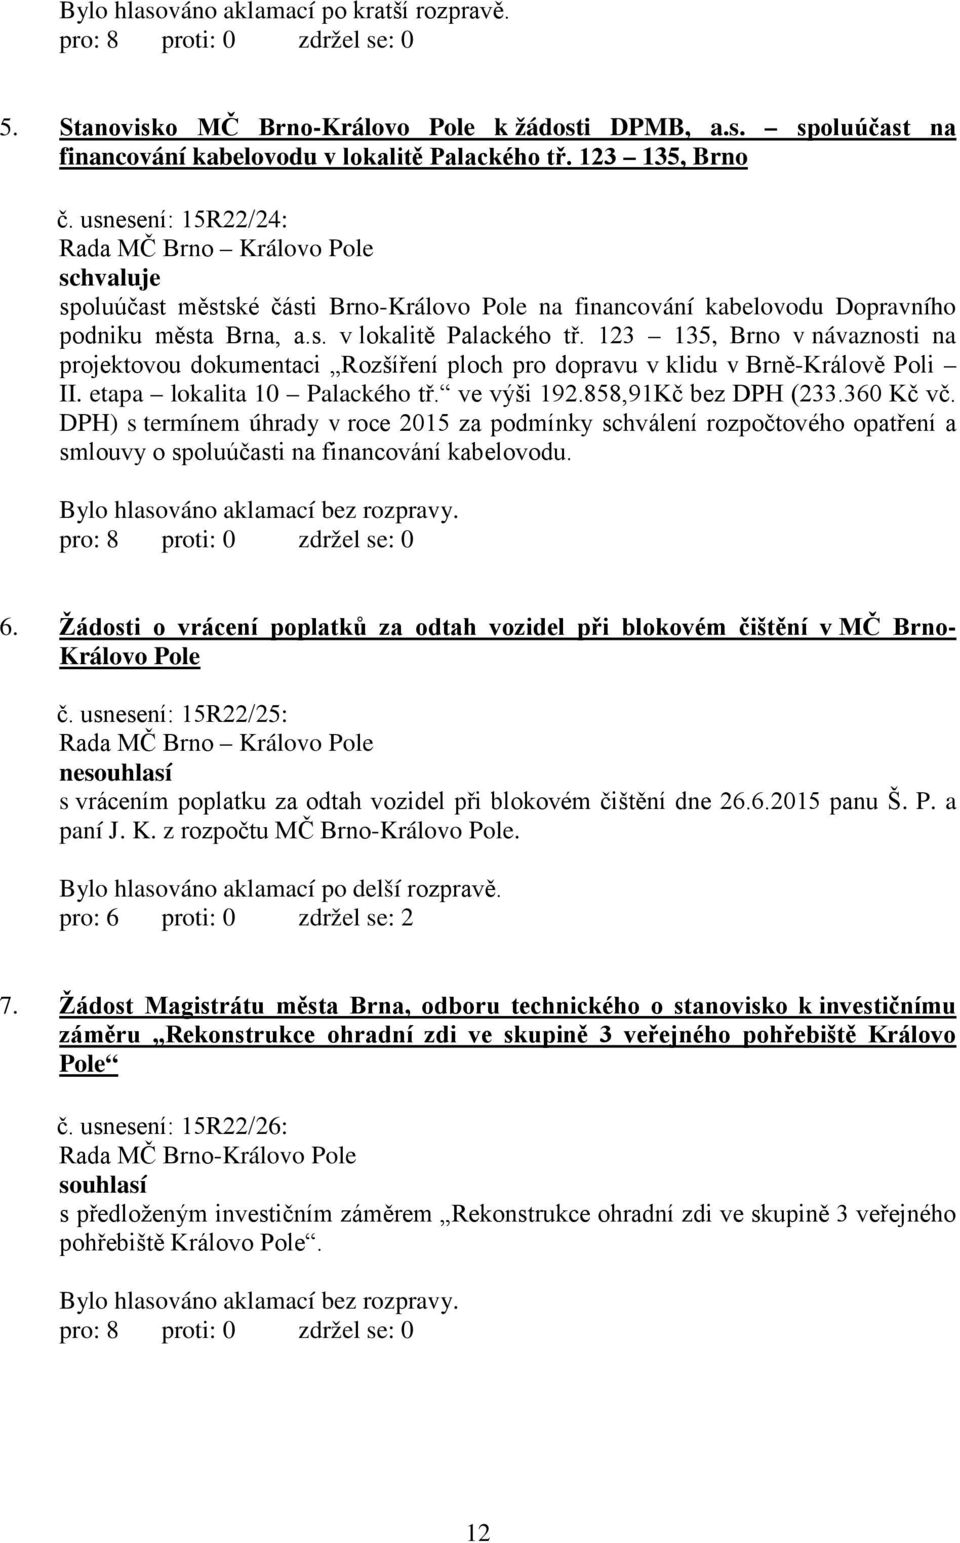 123 135, Brno v návaznosti na projektovou dokumentaci Rozšíření ploch pro dopravu v klidu v Brně-Králově Poli II. etapa lokalita 10 Palackého tř. ve výši 192.858,91Kč bez DPH (23360 Kč vč.